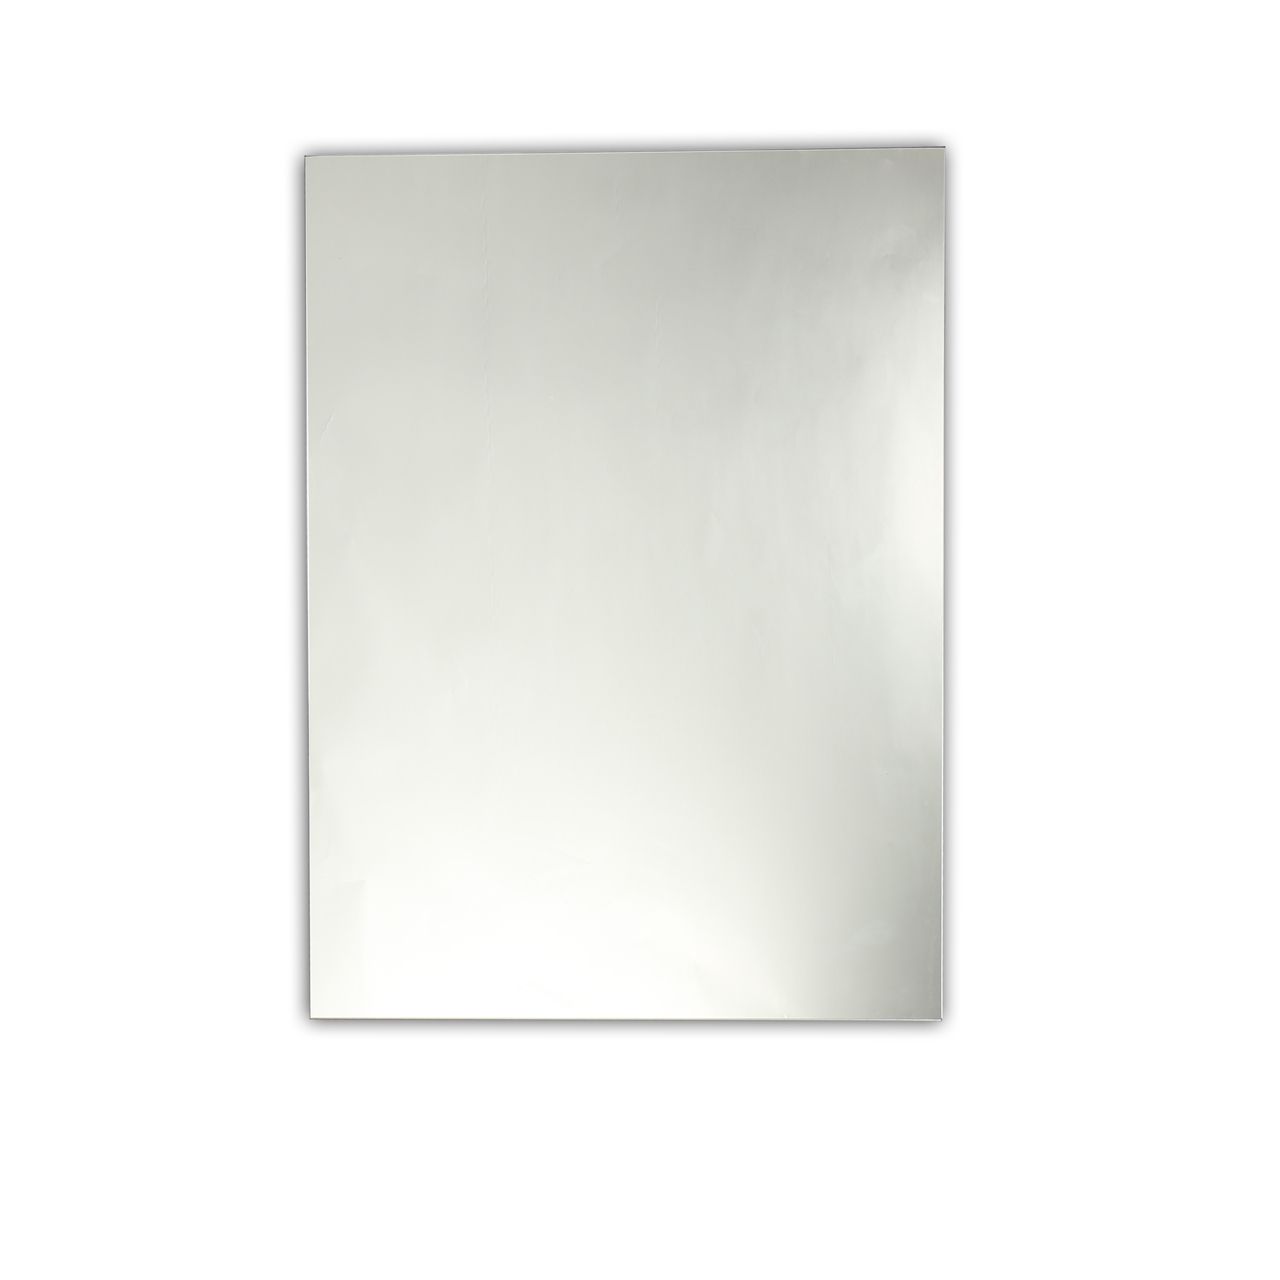 Chloe Lighting, Inc Ch7m063sv24 Frt Frameless Mirror Intended For Tetbury Frameless Tri Bevel Wall Mirrors (Photo 12 of 15)